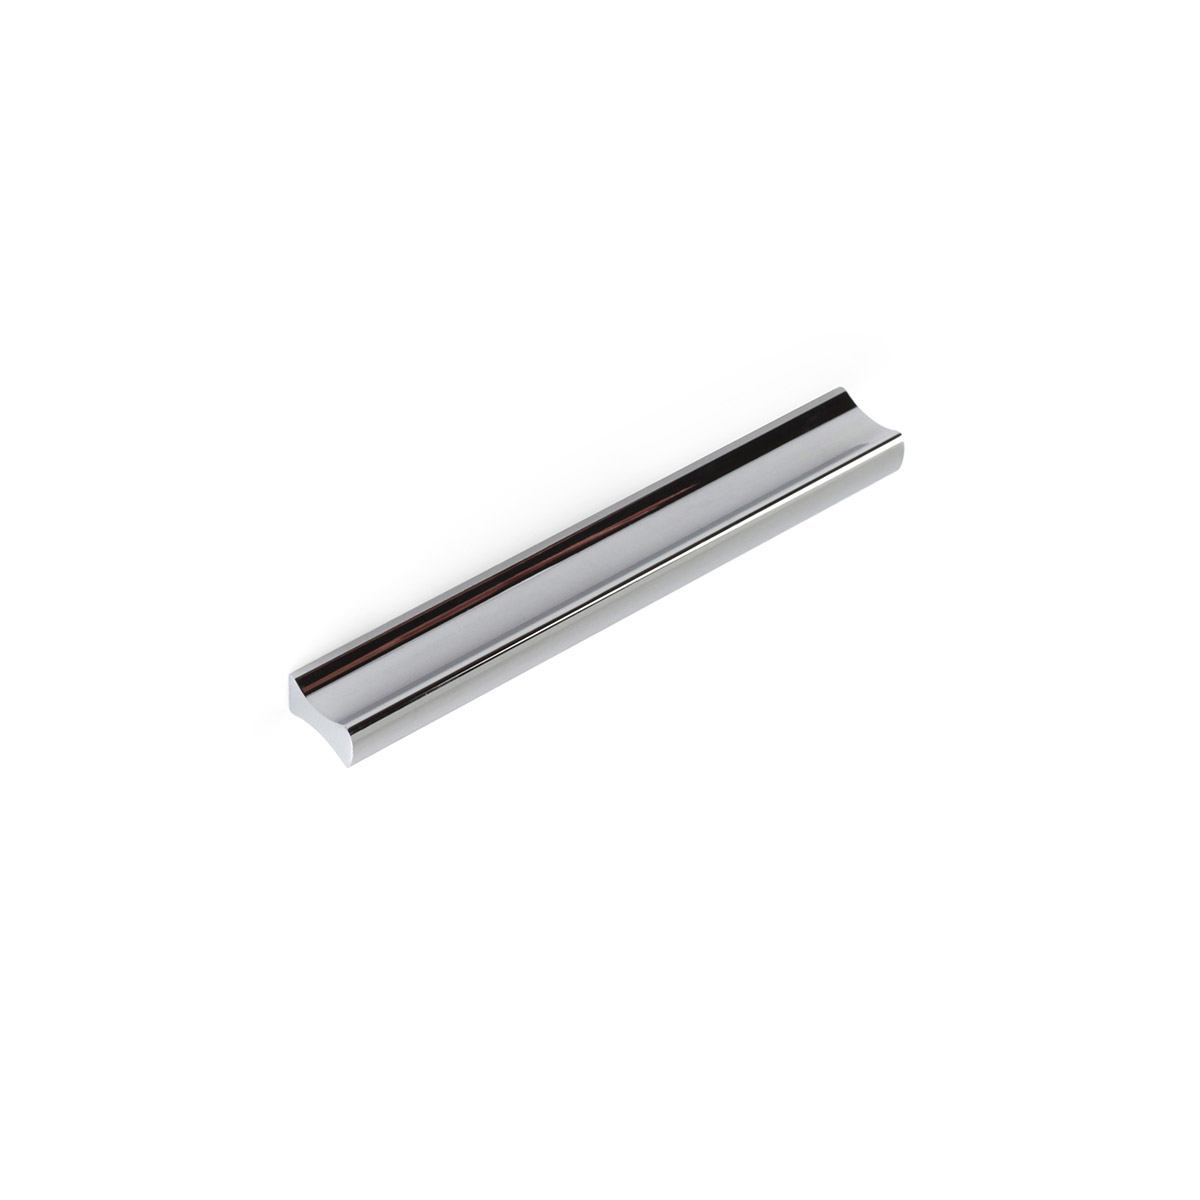 Asa de aluminio con acabado cromo brillo, dimensiones:120x9x17mm y entrepuntos:64mm